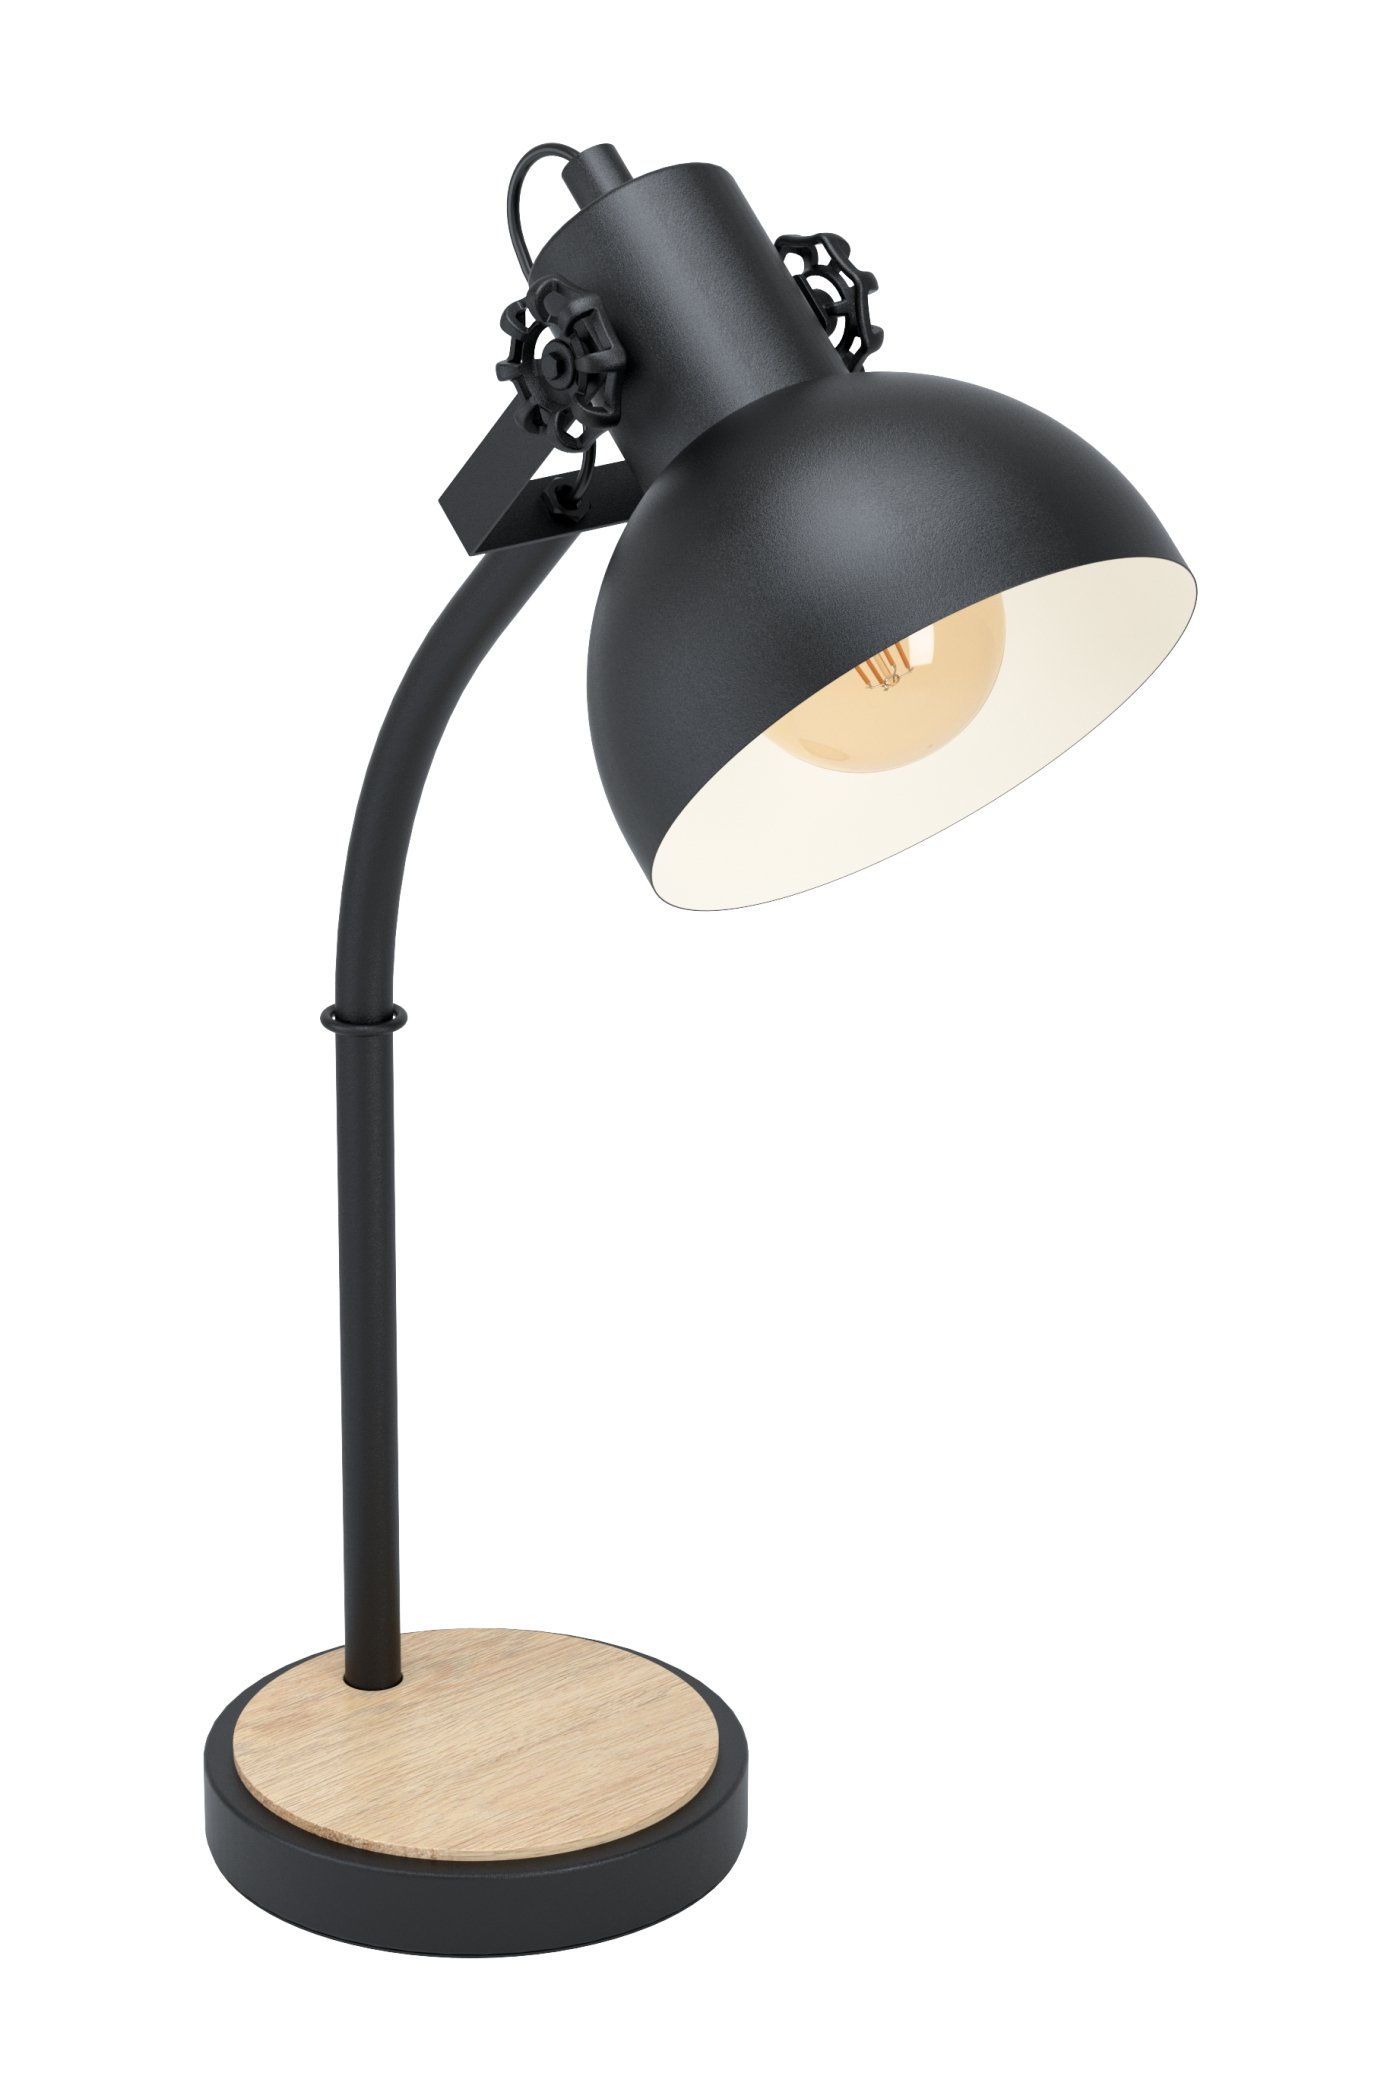   
                        Настільна лампа EGLO (Австрія) 26026    
                         у стилі лофт.  
                        Тип джерела світла: cвітлодіодні led, енергозберігаючі, розжарювання.                                                 Кольори плафонів і підвісок: чорний, бежевий.                         Матеріал: сталь, дерево.                          фото 1